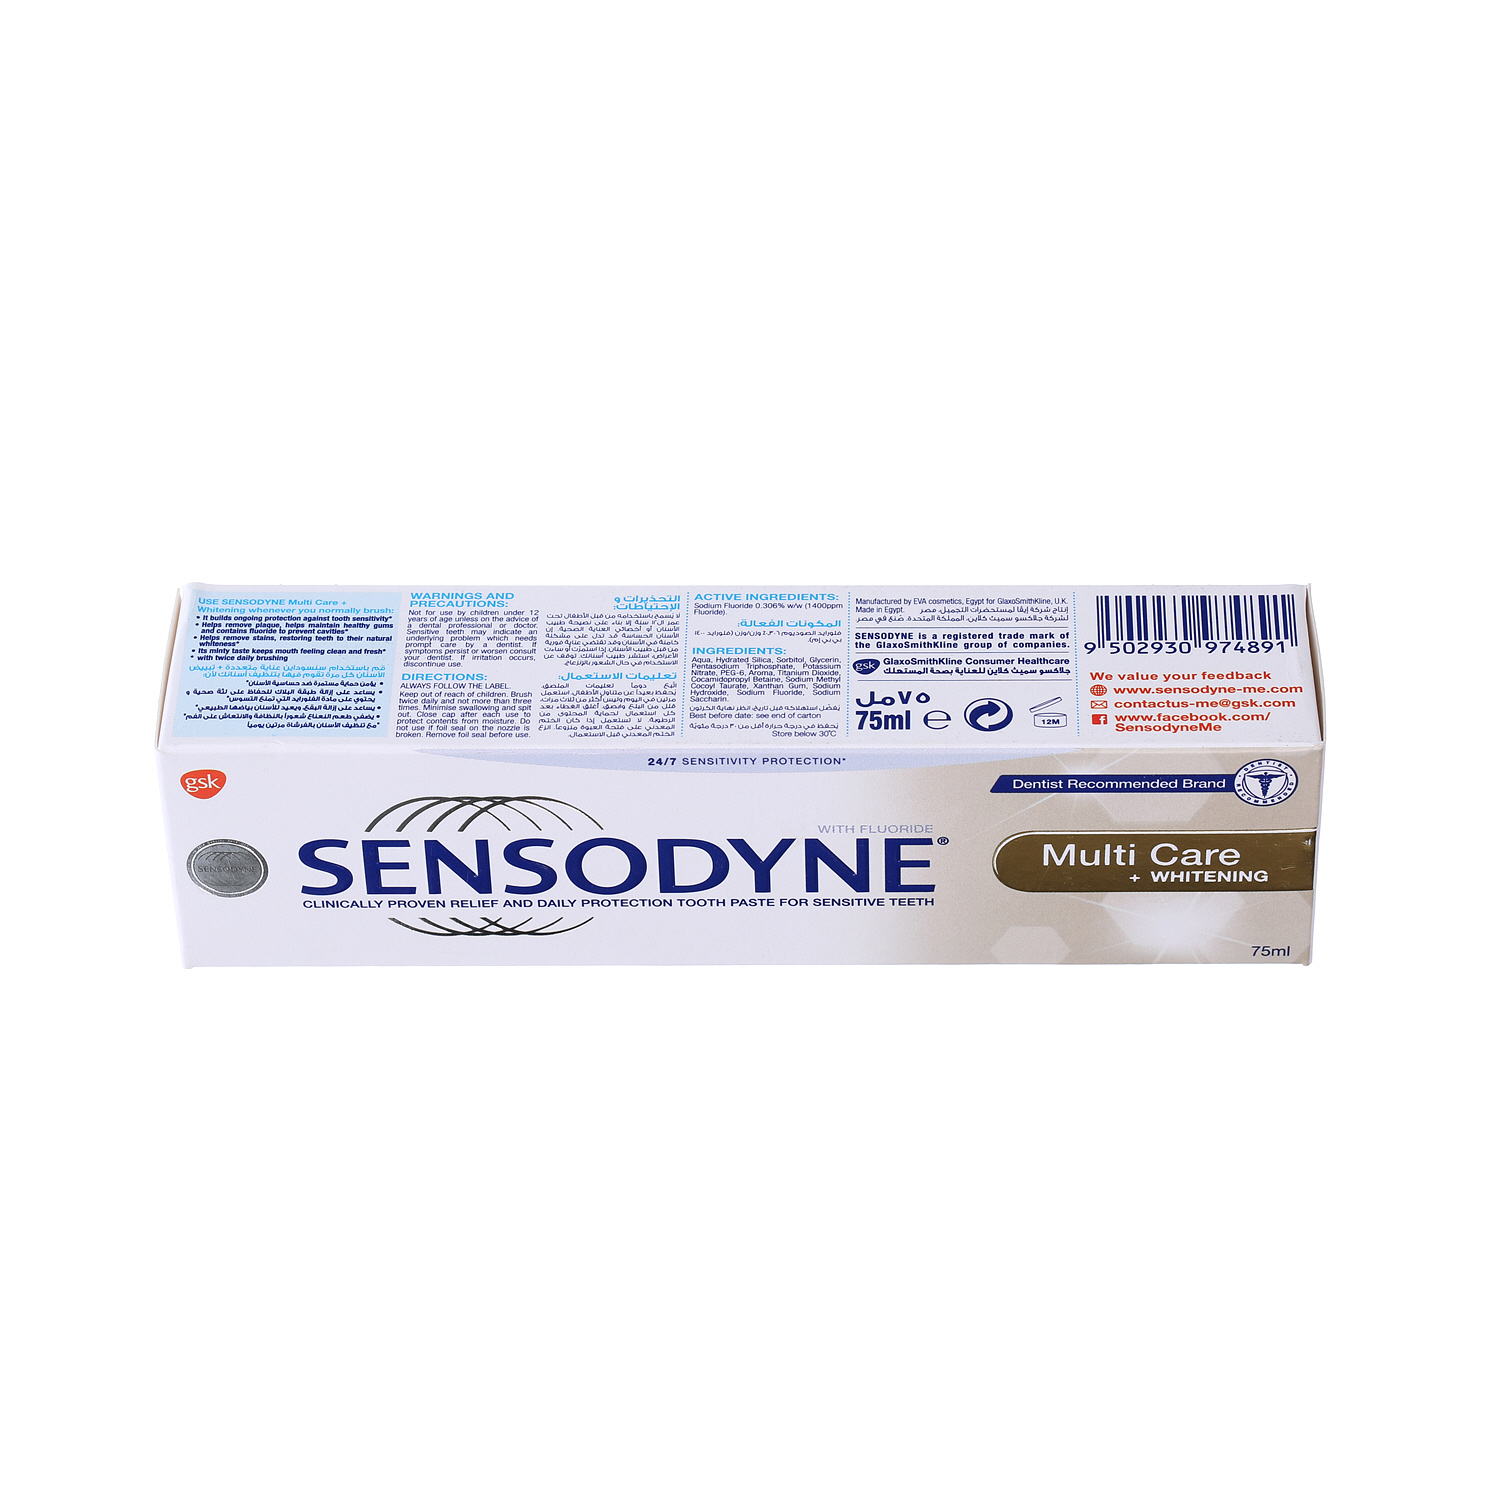 Sensodyne Toothpaste Multicare + Whitening 75ml